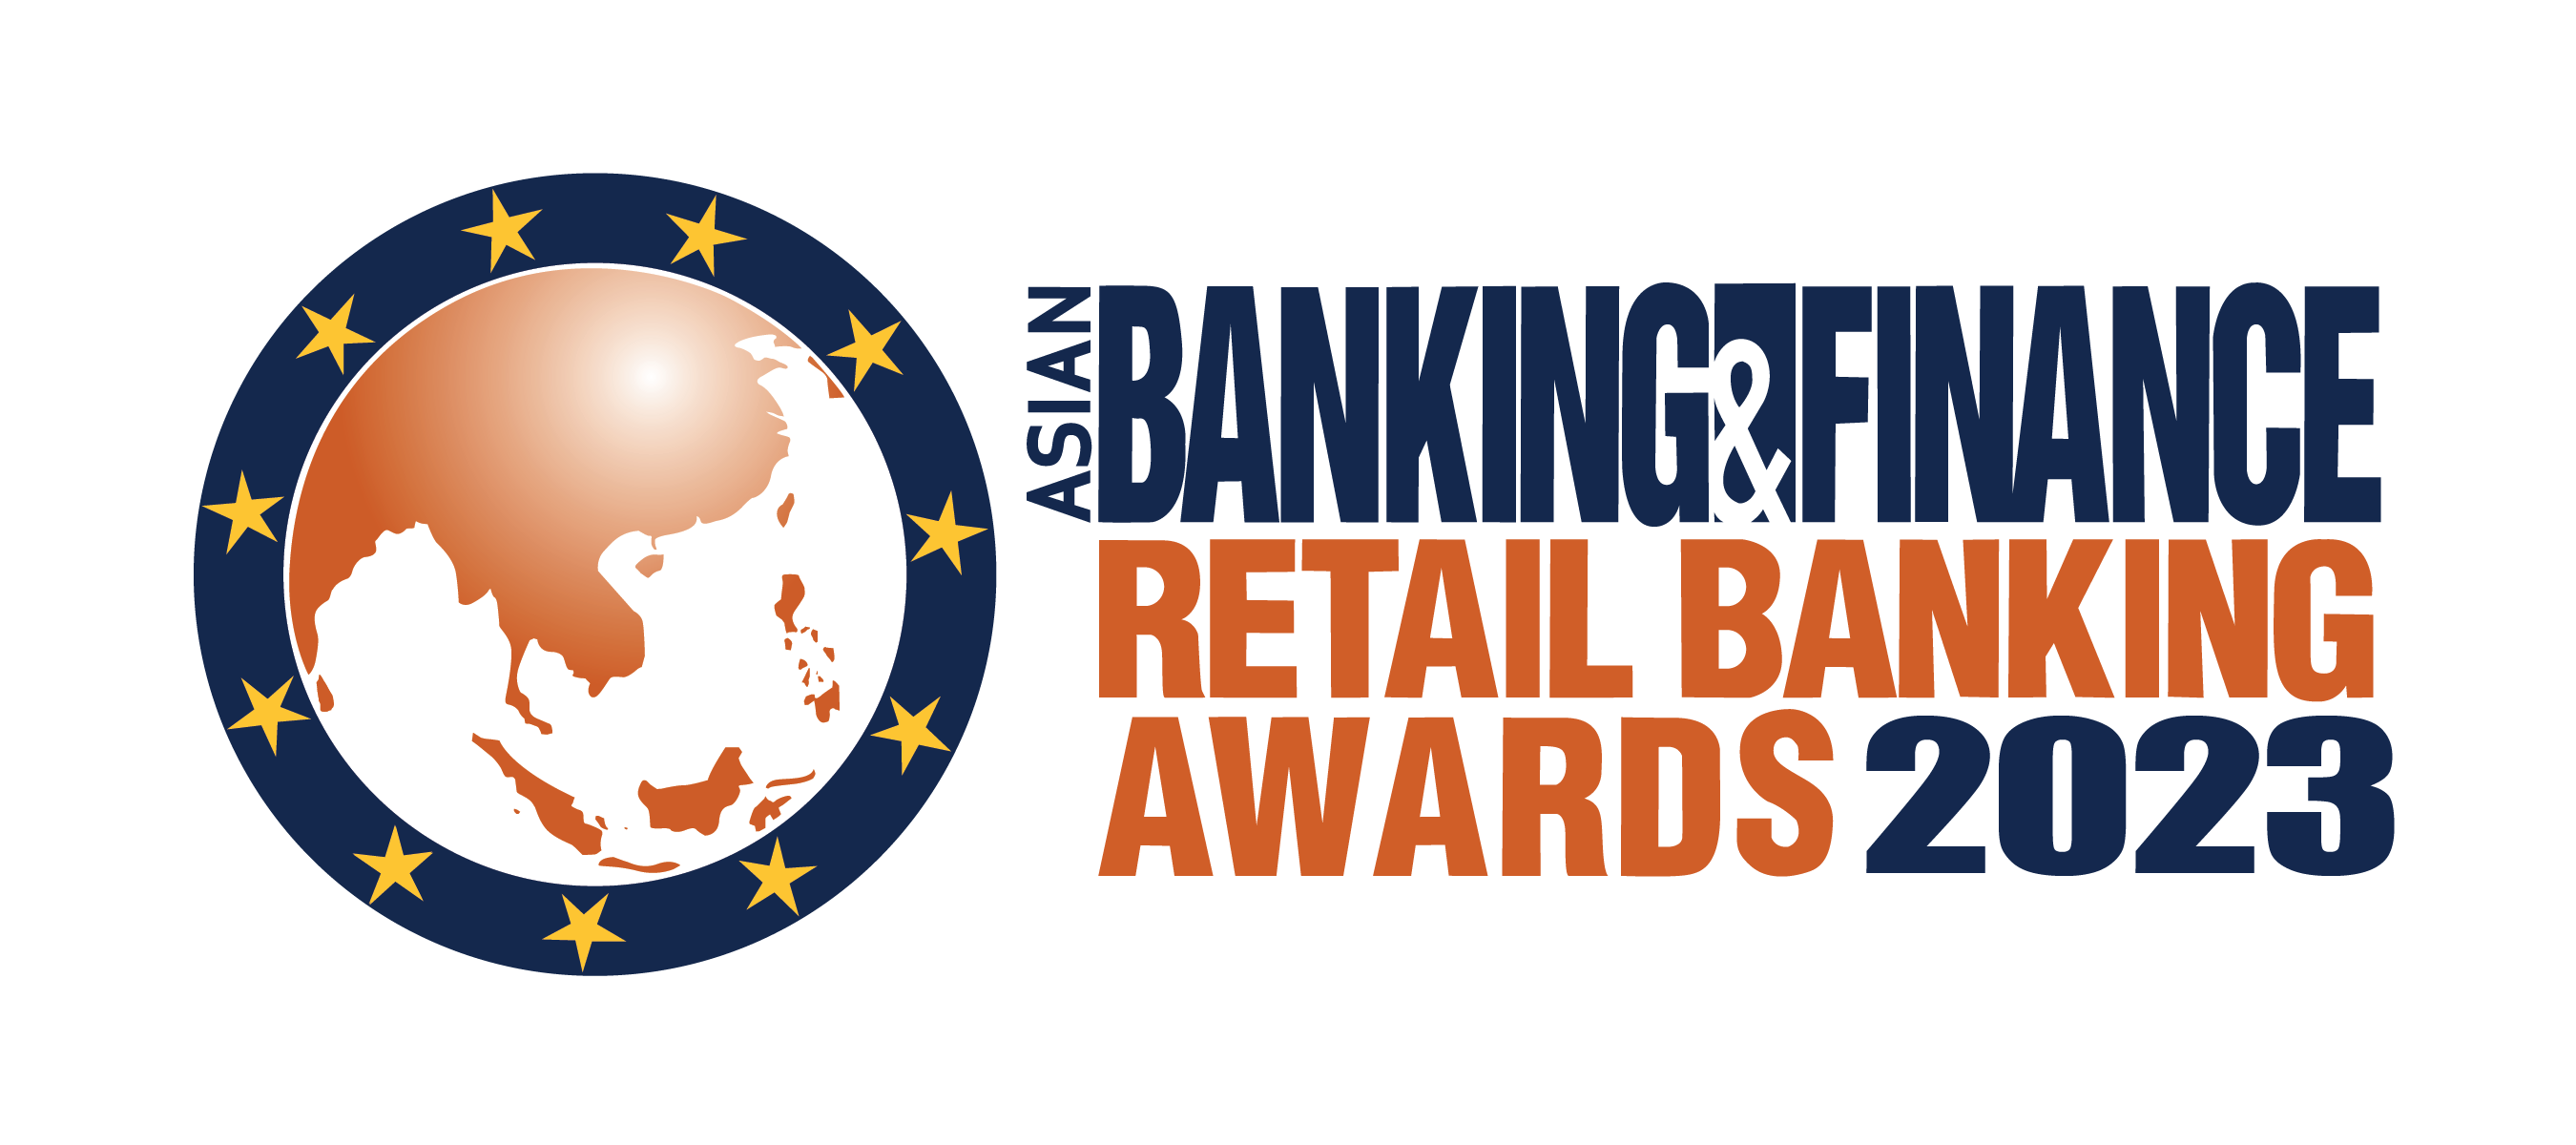 Asian Banking & Finance Retail Banking Awards 2021 logo